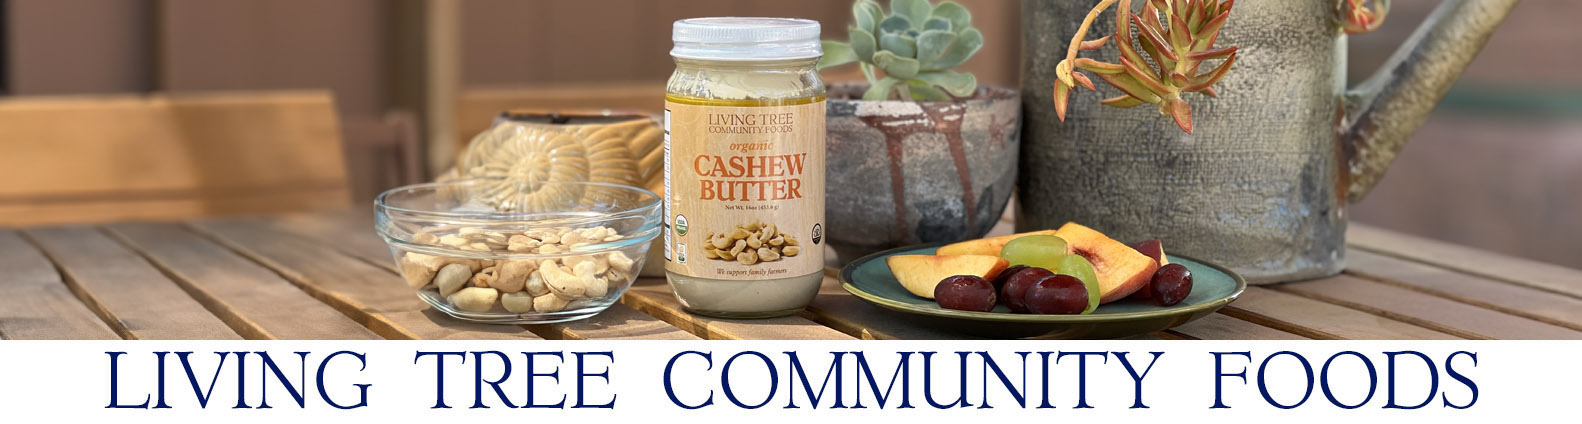 Cashew Butter Newsletter Header